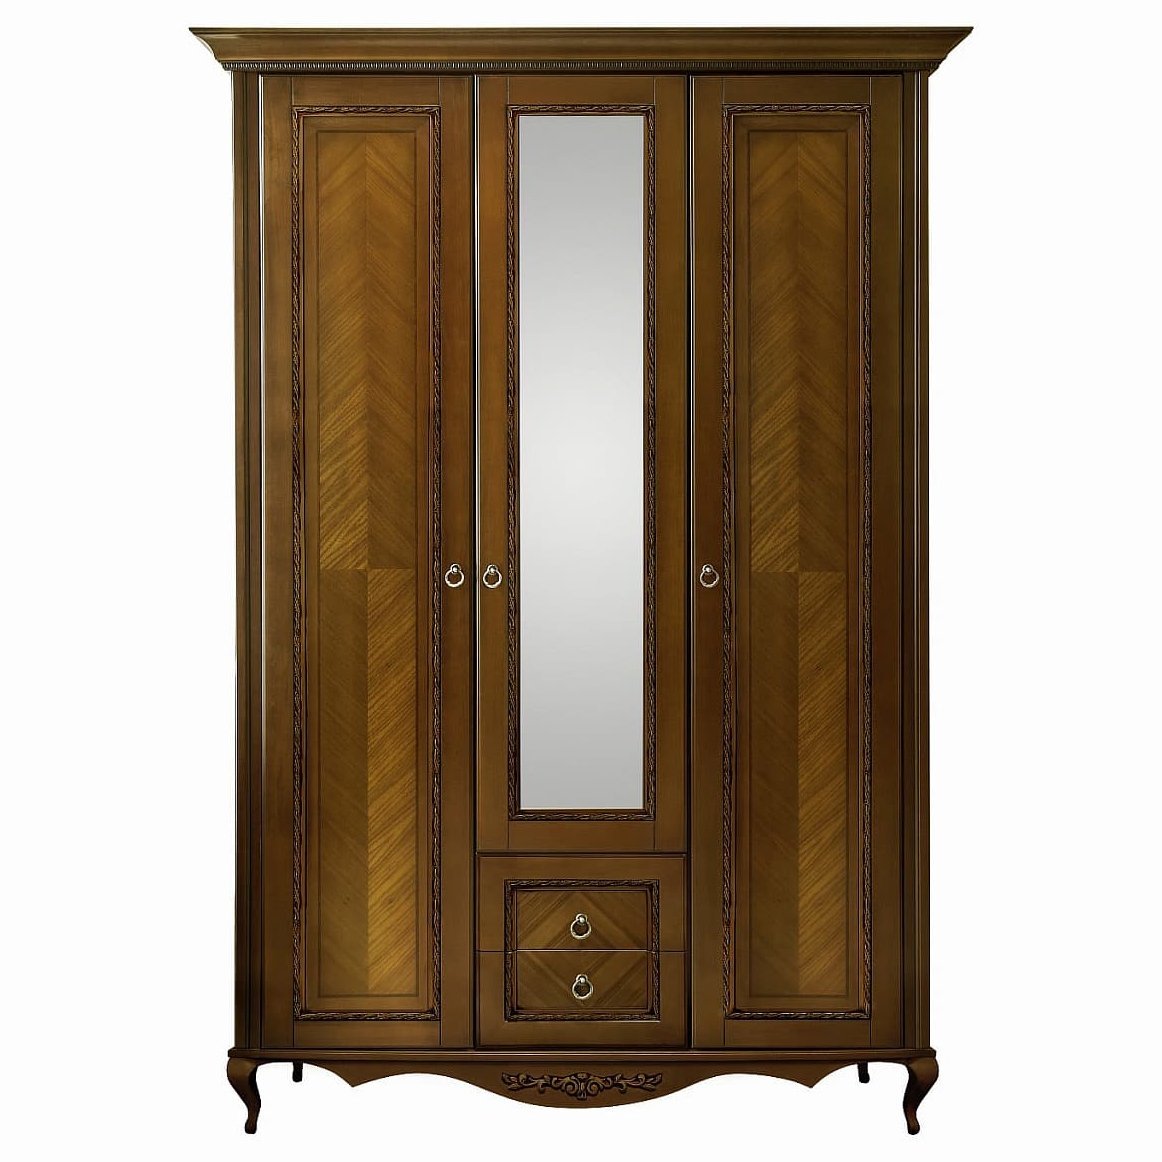 Шкаф платяной Timber Неаполь, 3-х дверный с зеркалом 159x65x227 см, цвет: орех (Т-523/N)Т-523